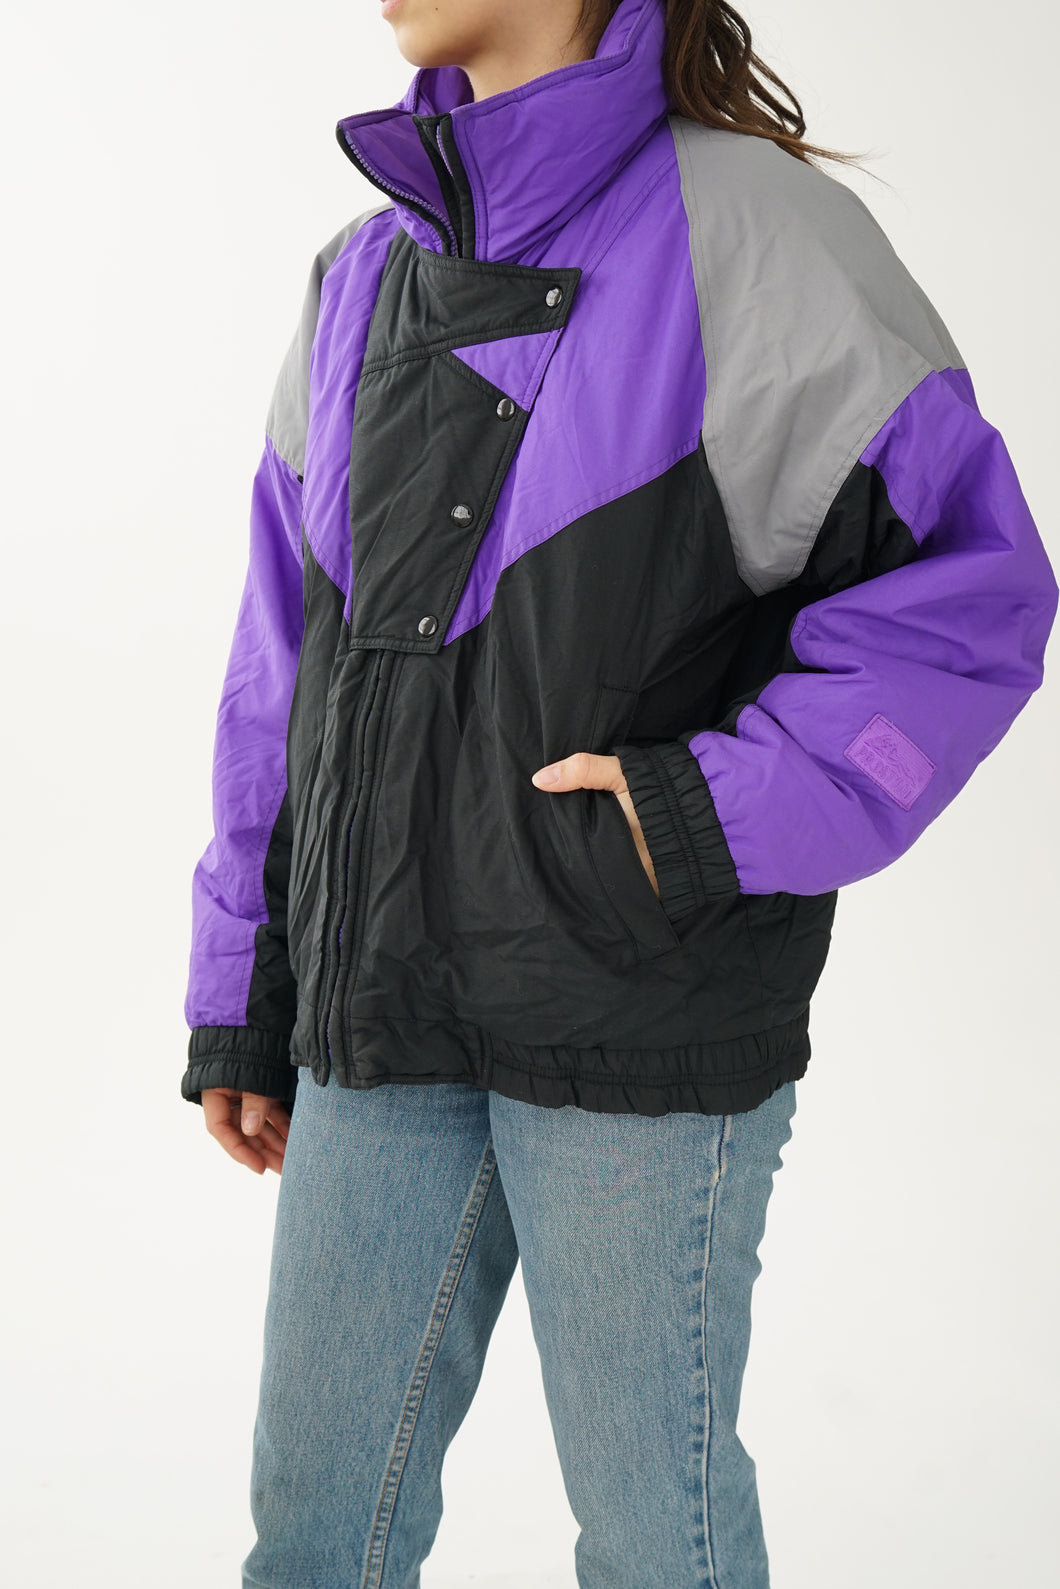 Retro black and purple ProStyled jacket size 14